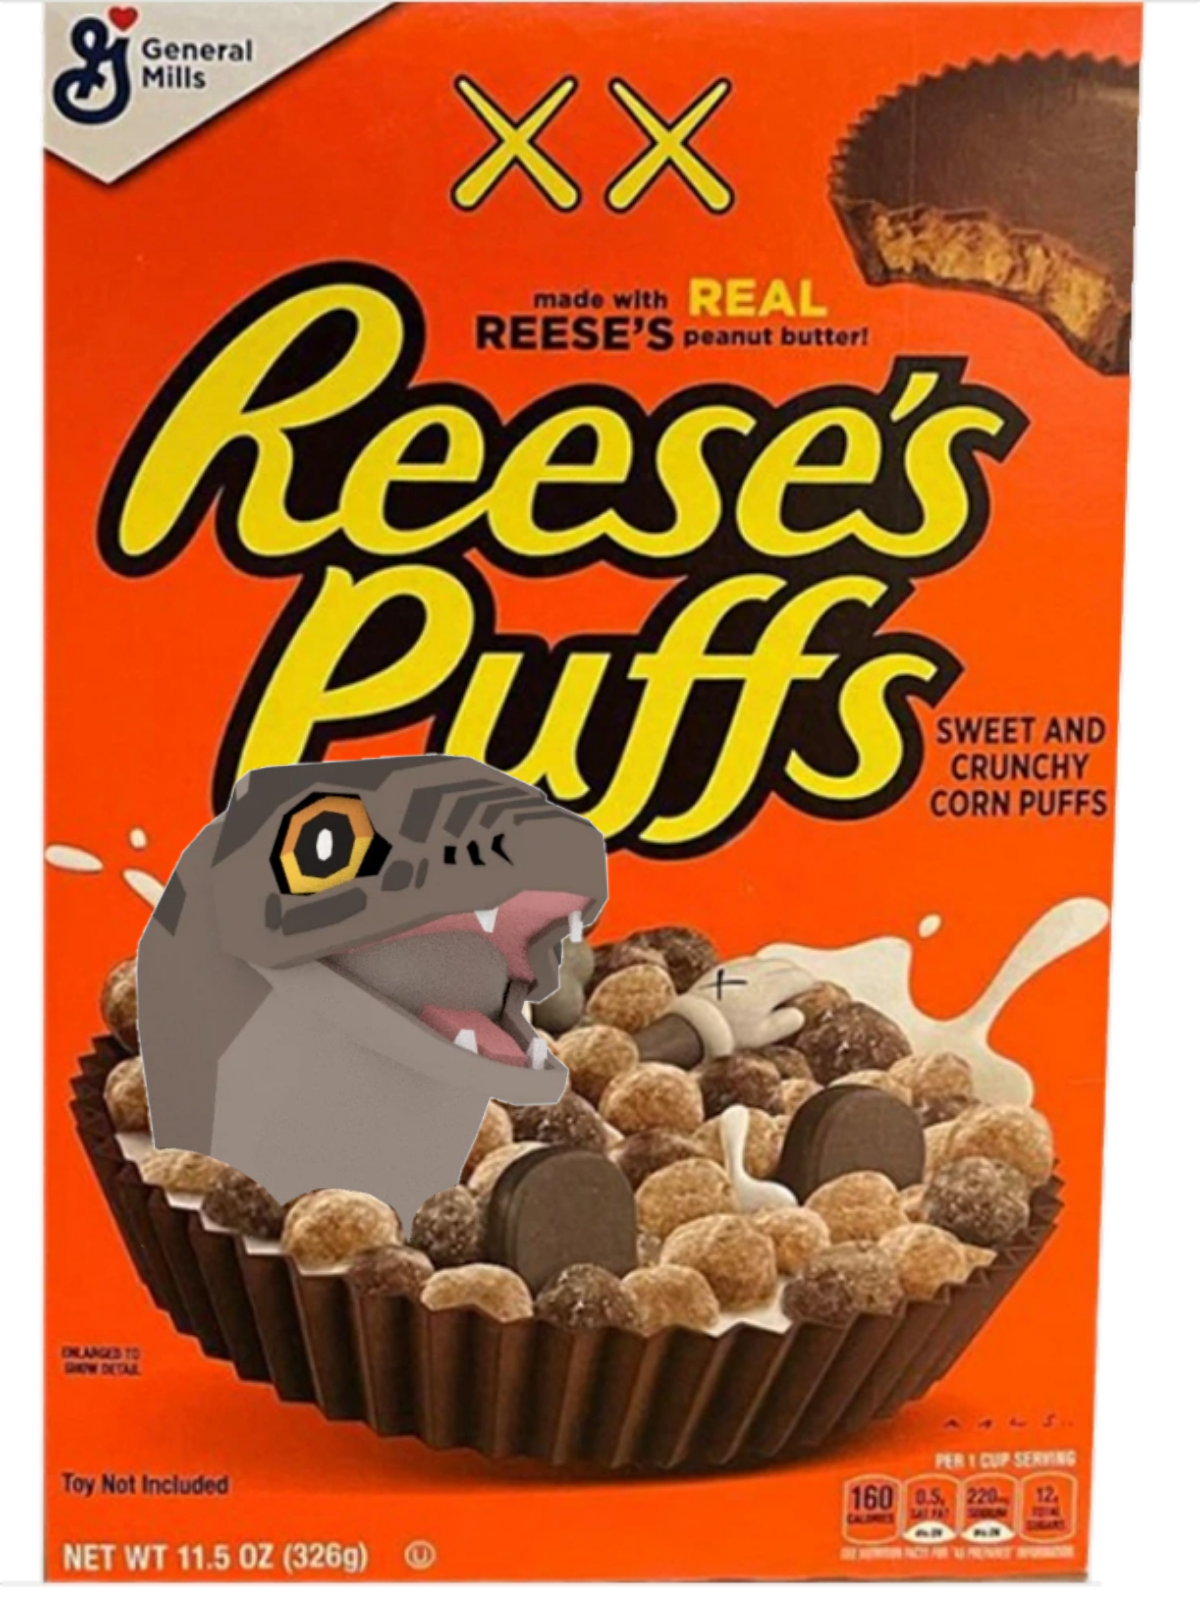 Reese's puffs reese's puffs eat em up eat em up eat em up | Fandom